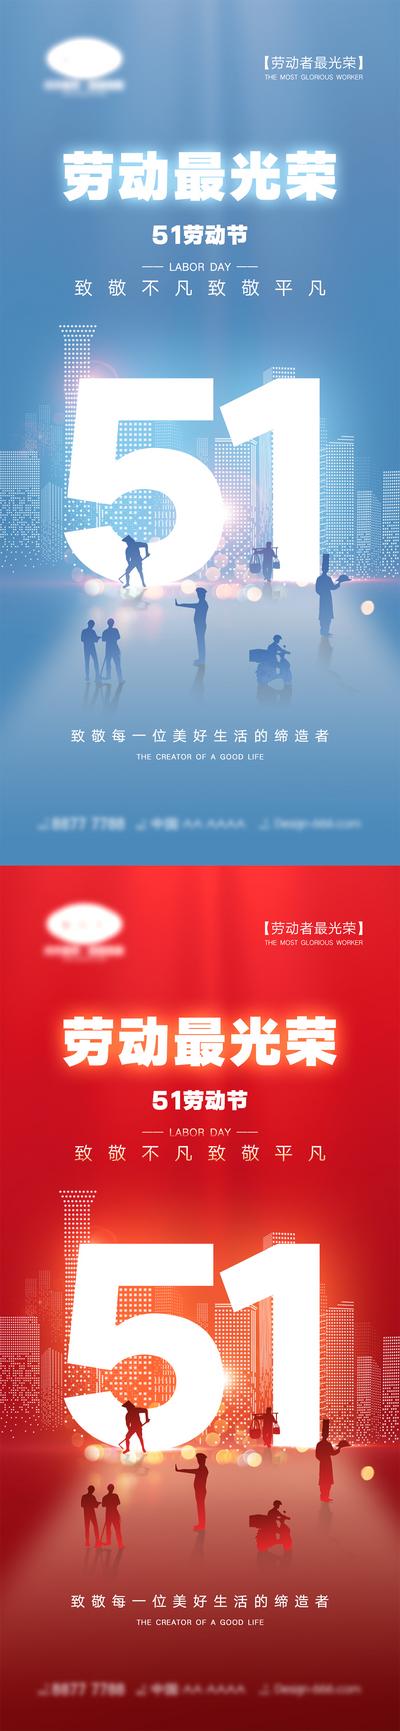 【南门网】海报 五一劳动节 51 劳动节 国际劳动节 宣传